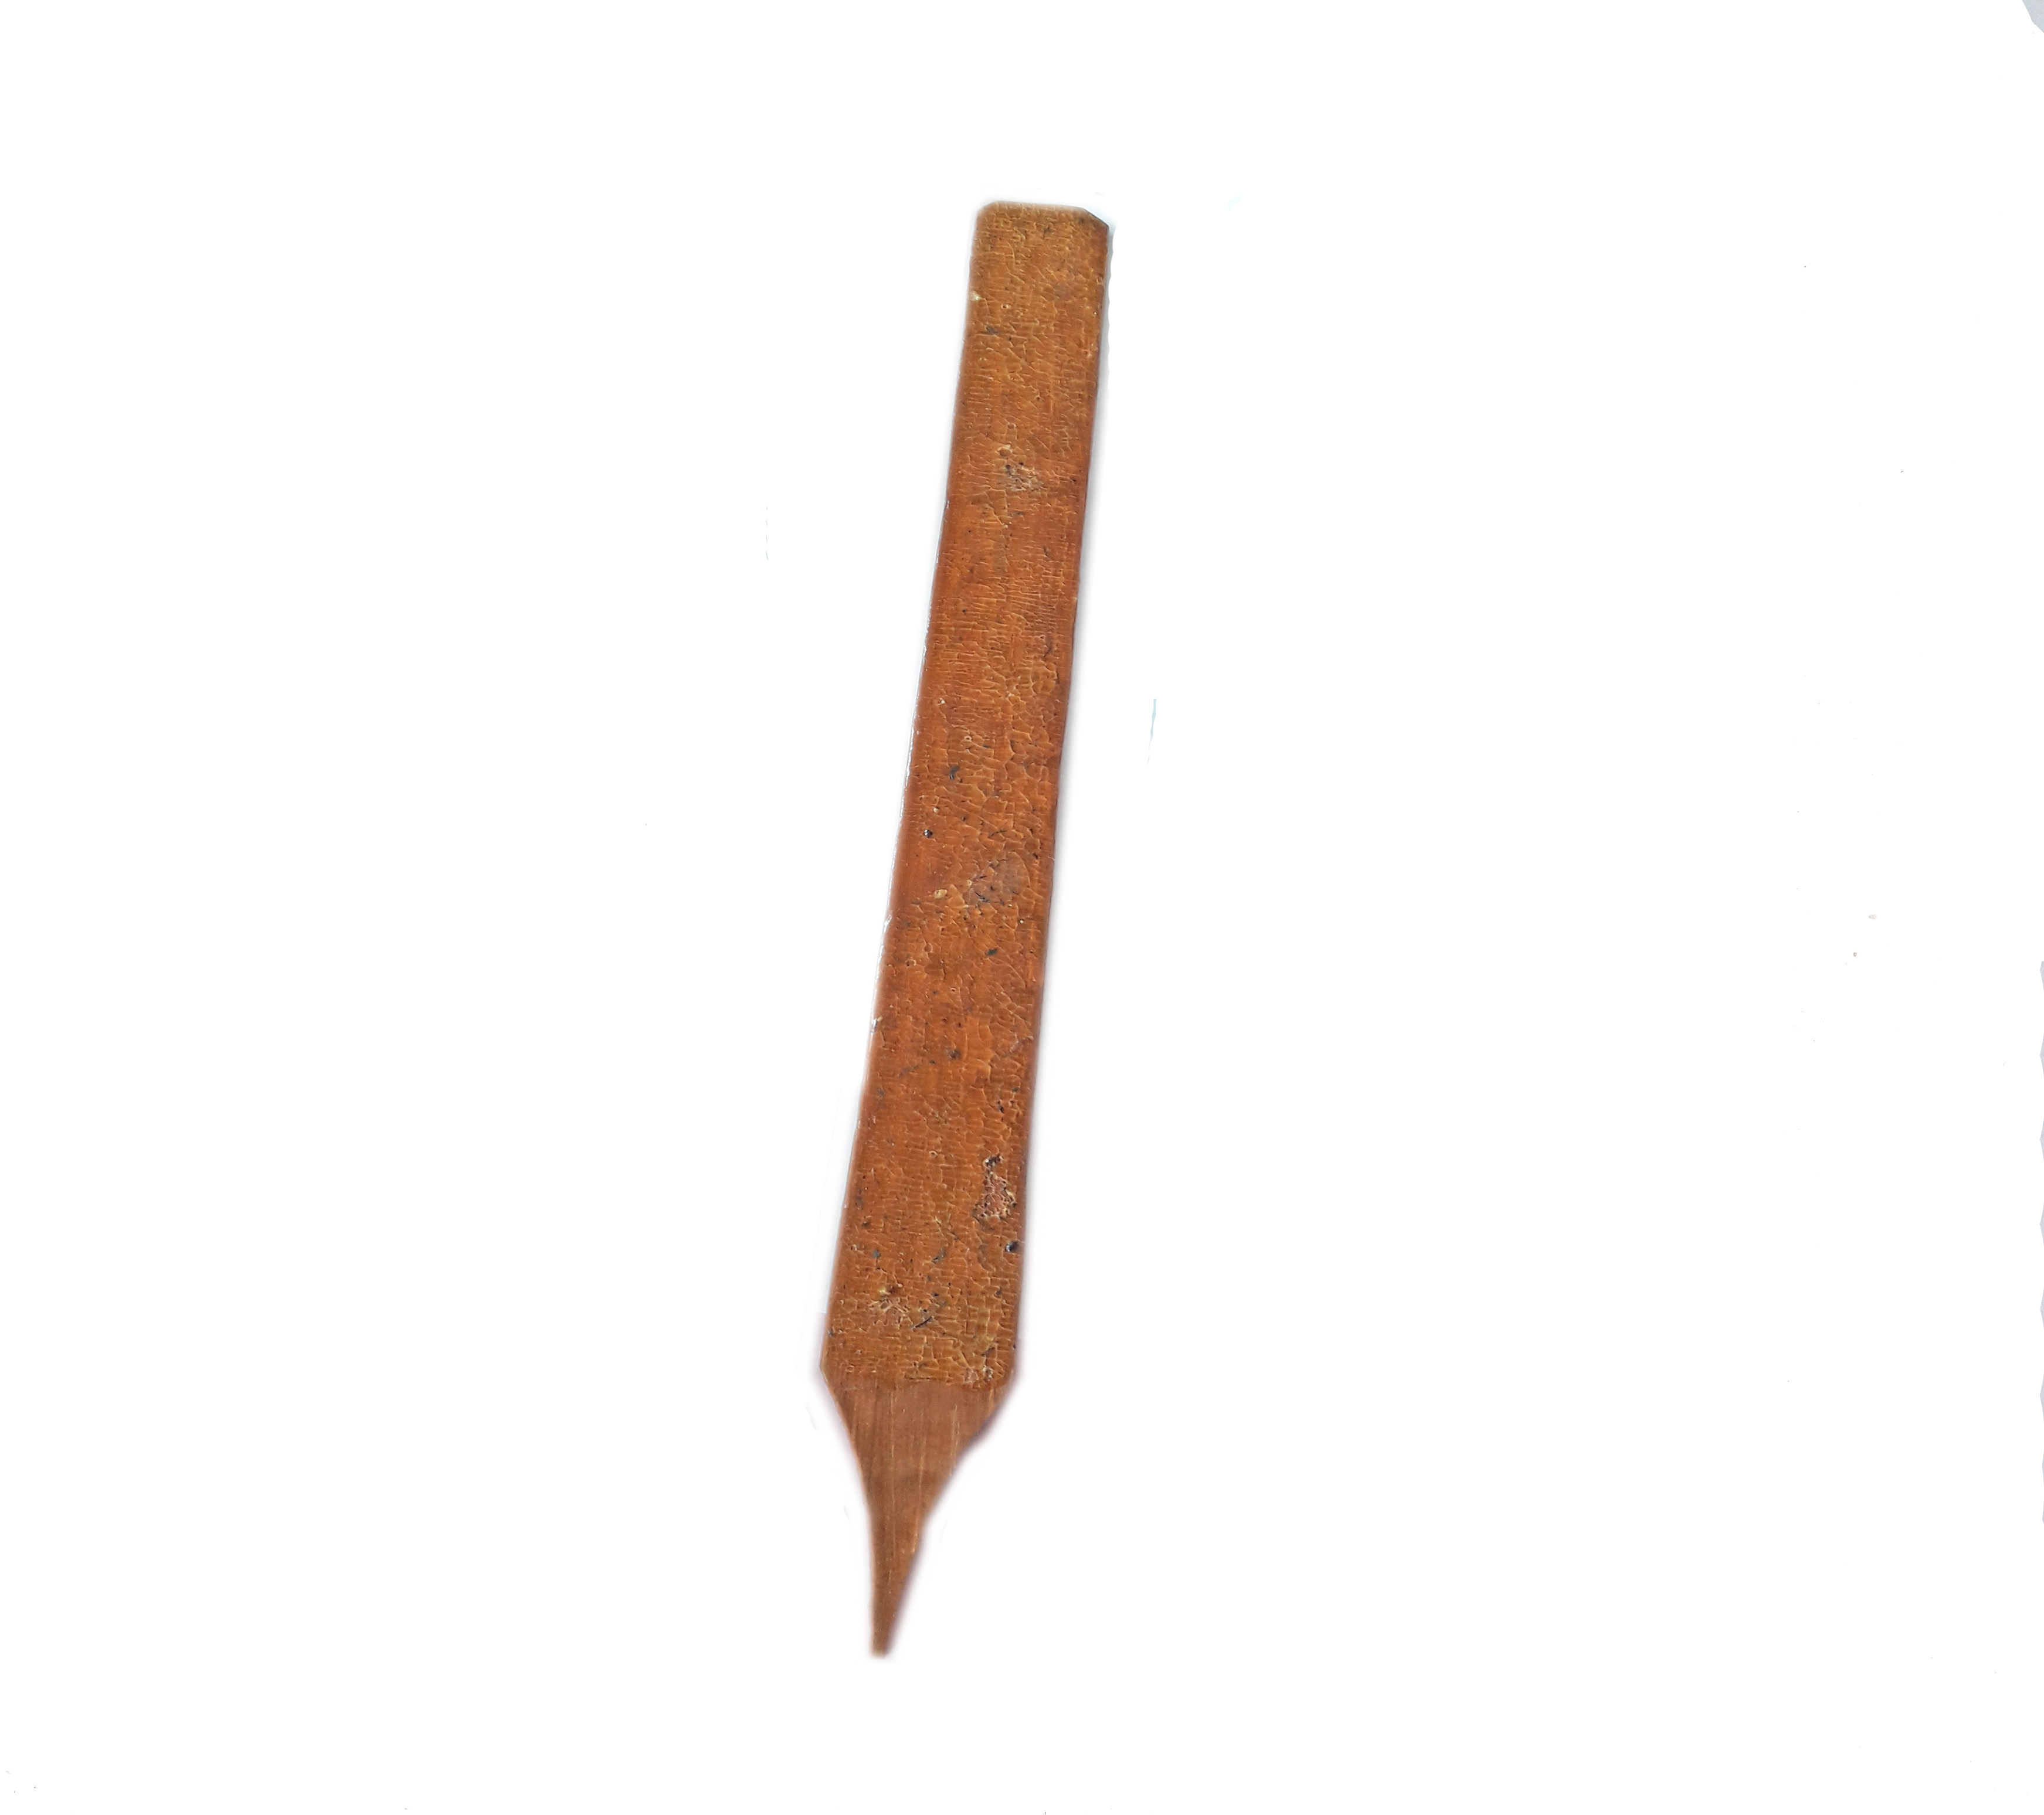 Kambo stick (Matses)